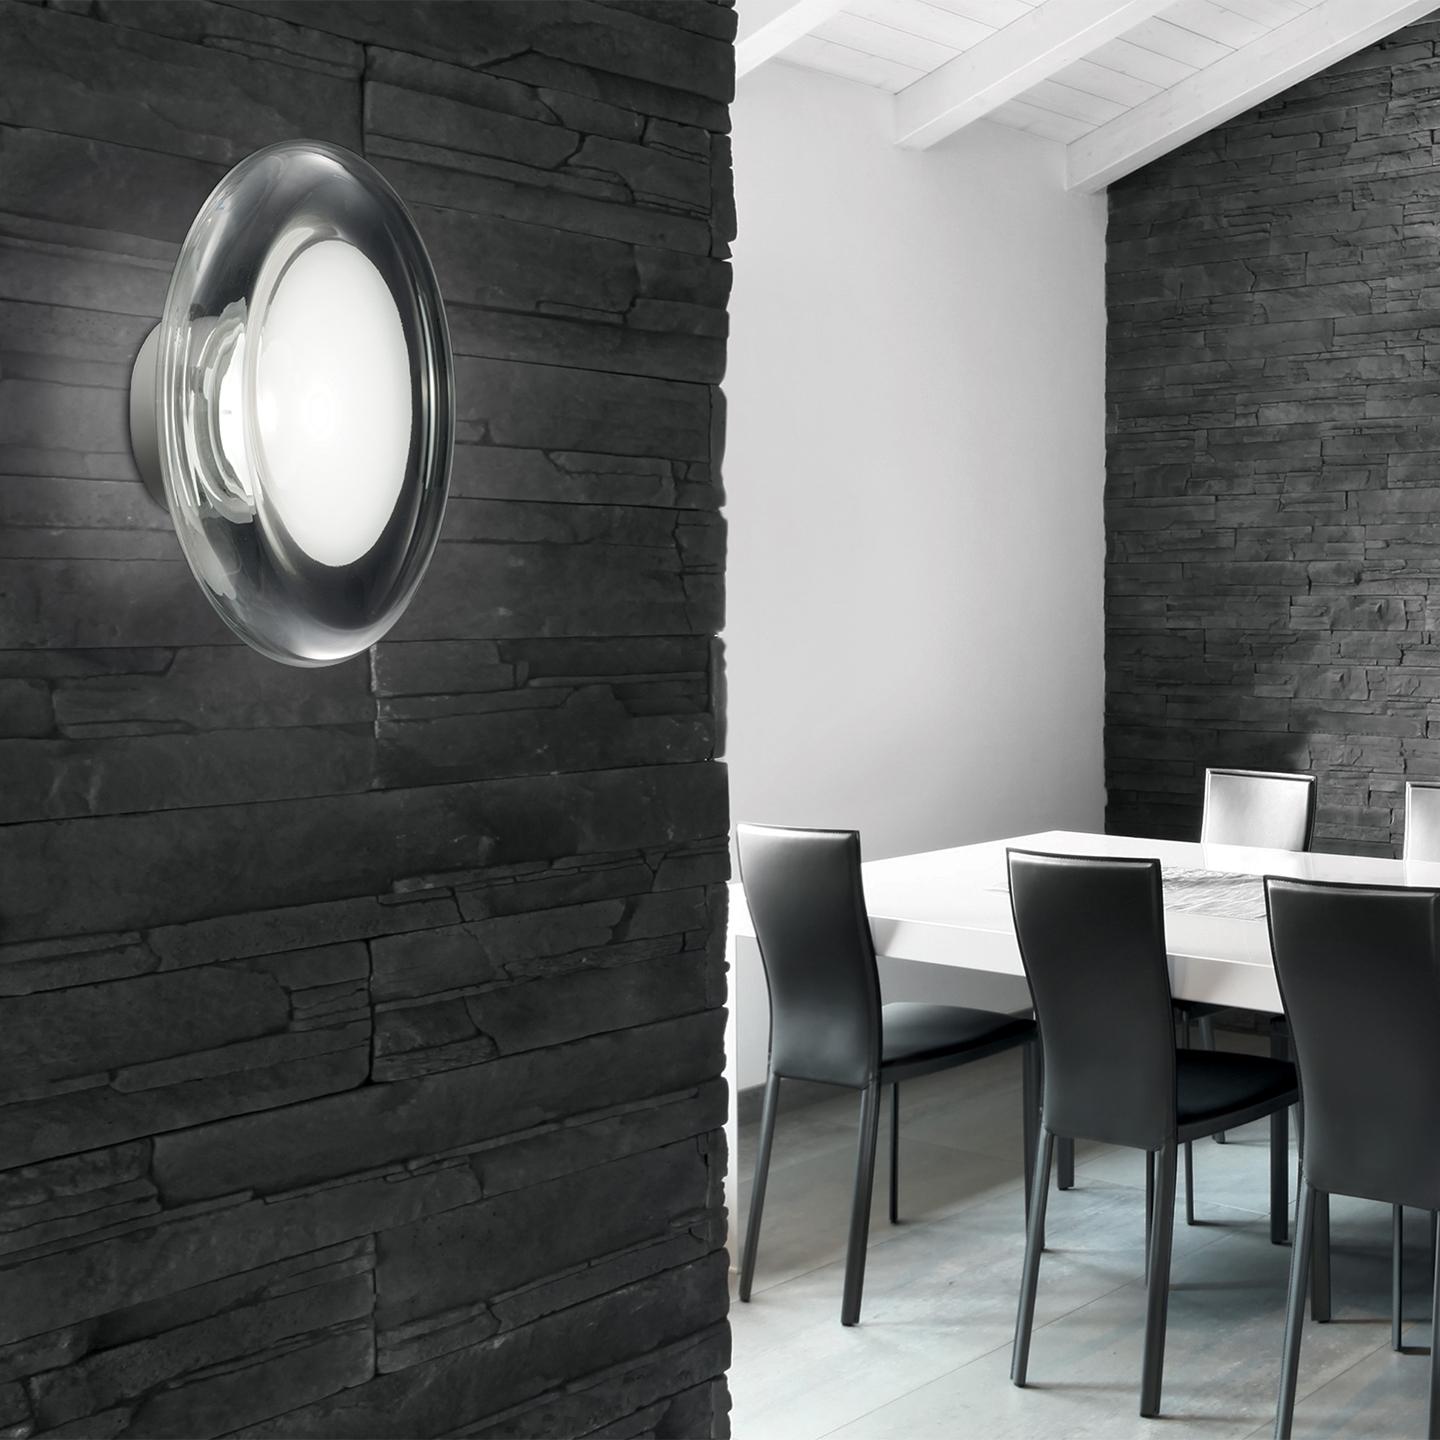 Die Keyra schafft mit ihrer schönen, modernen Form und ihrer einzigartigen Oberfläche ein schönes Licht für Ihr Zuhause, Ihr Büro oder Ihren Objektbereich. Die 2011 von Roberto Paoli entworfene Keyra hat eine mundgeblasene Form, die in der Mitte